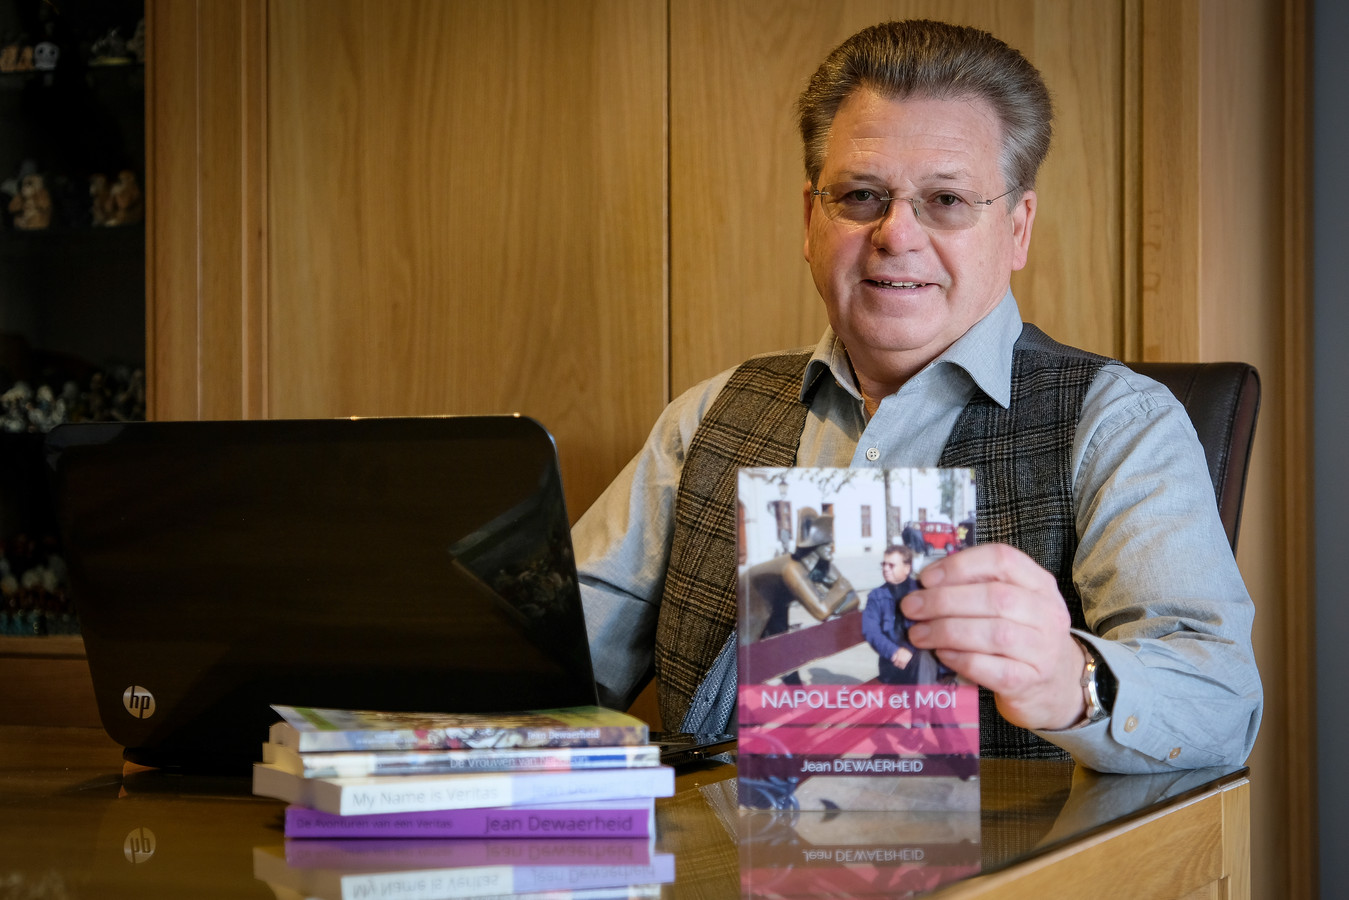 Schrijver Jean Dewaerheid met zijn boek 'Napoléon et Moi'.